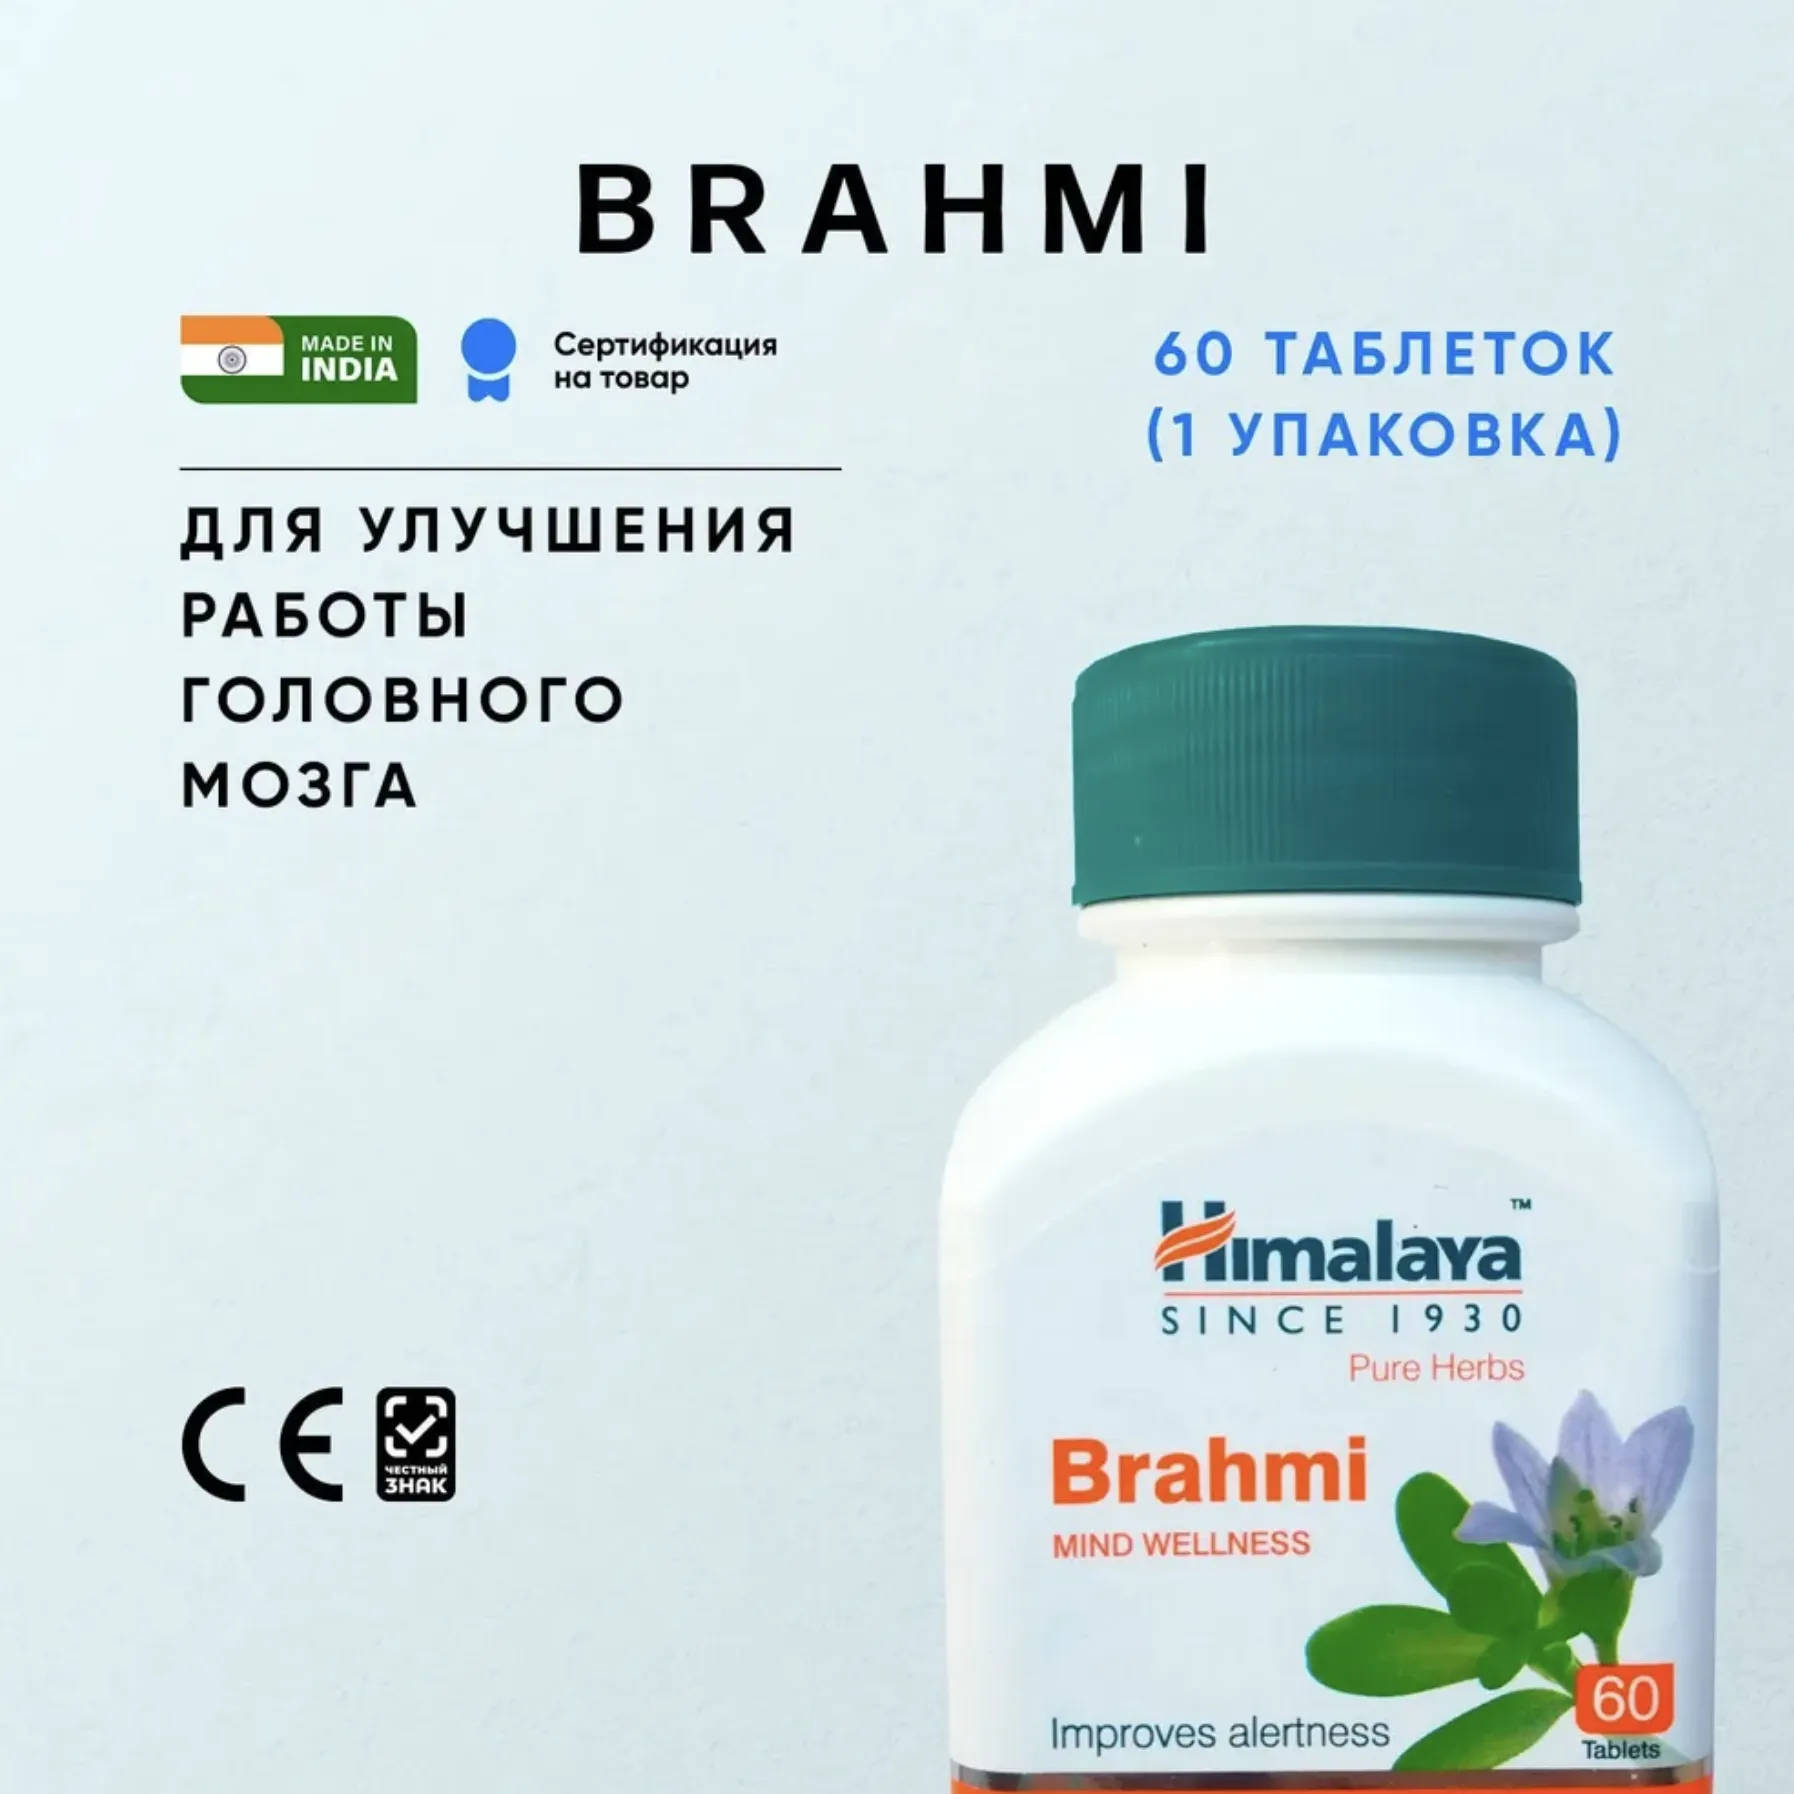 Средство Брахми Хималая (Brahmi Himalaya) пищевая добавка для улучшения работы мозга#1